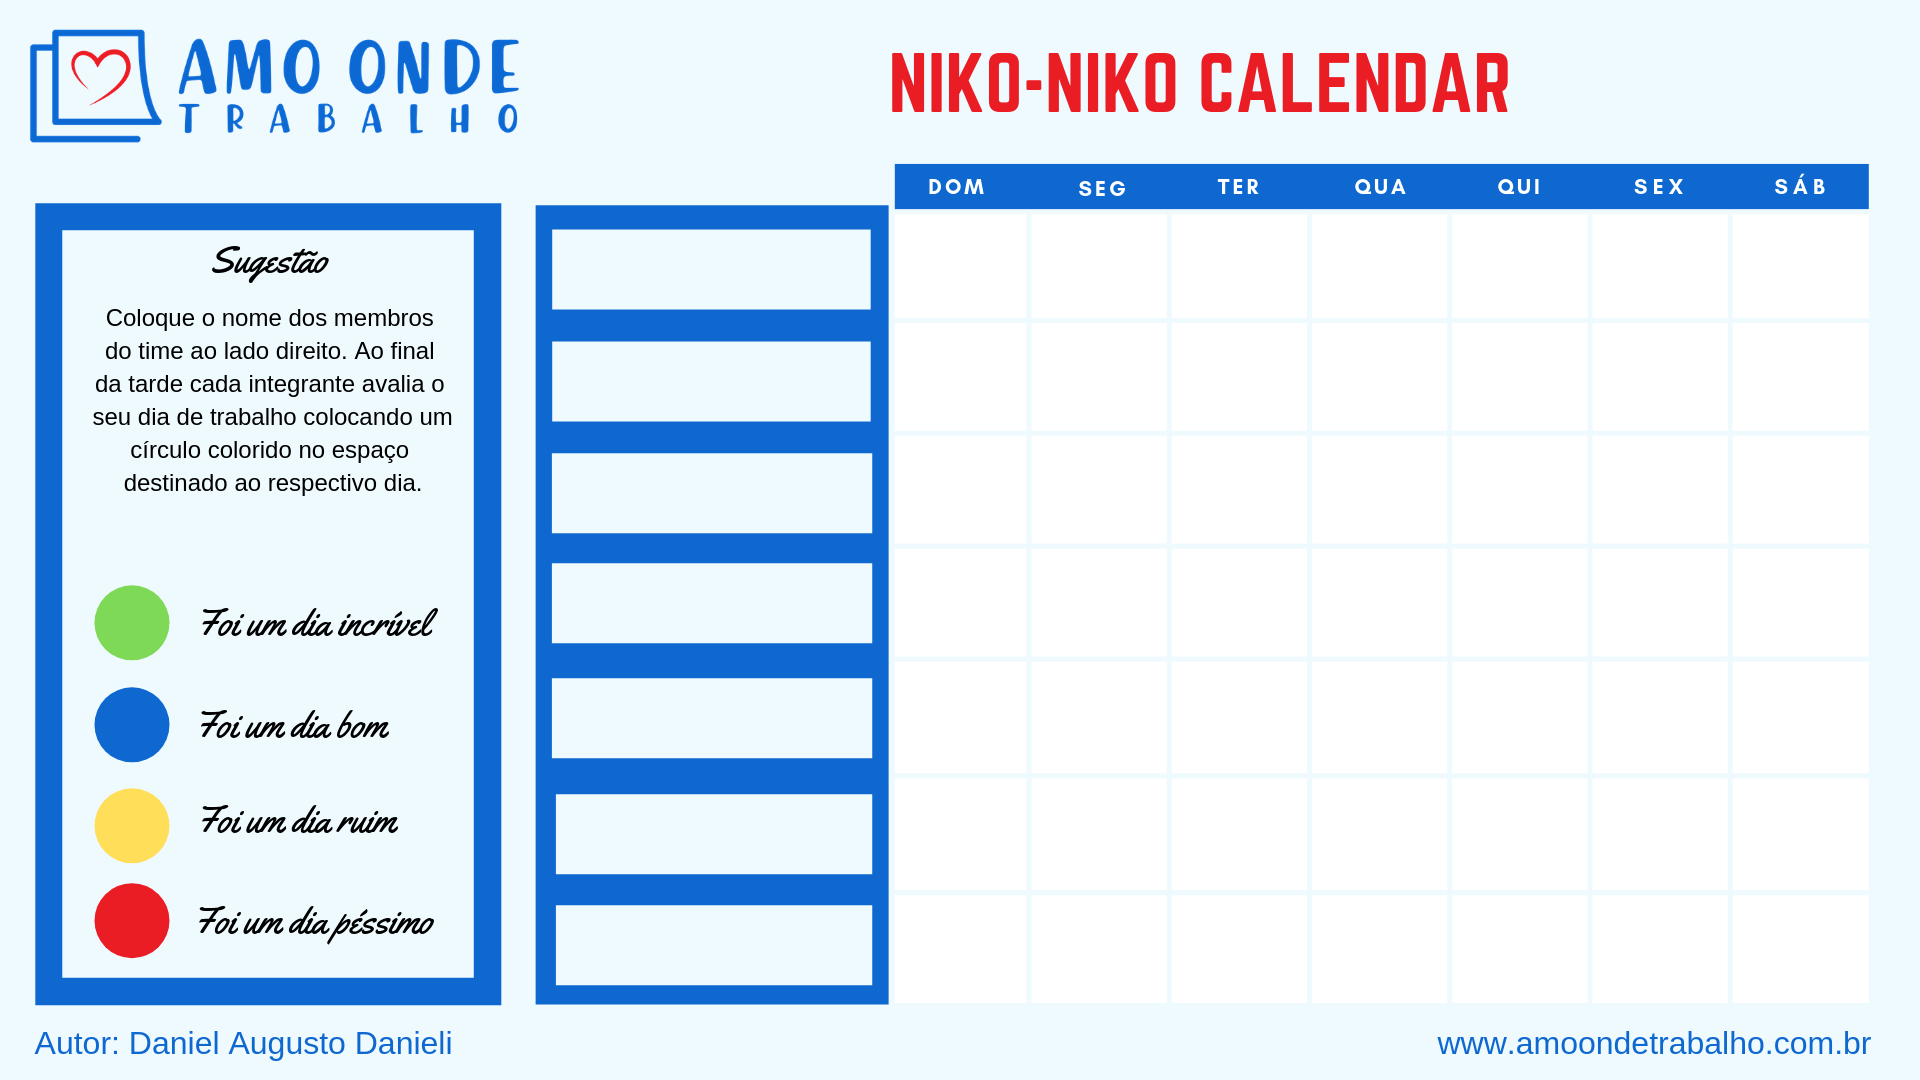 Exemplo de um Calendário Niko-Niko baseado em uma semana de trabalho.